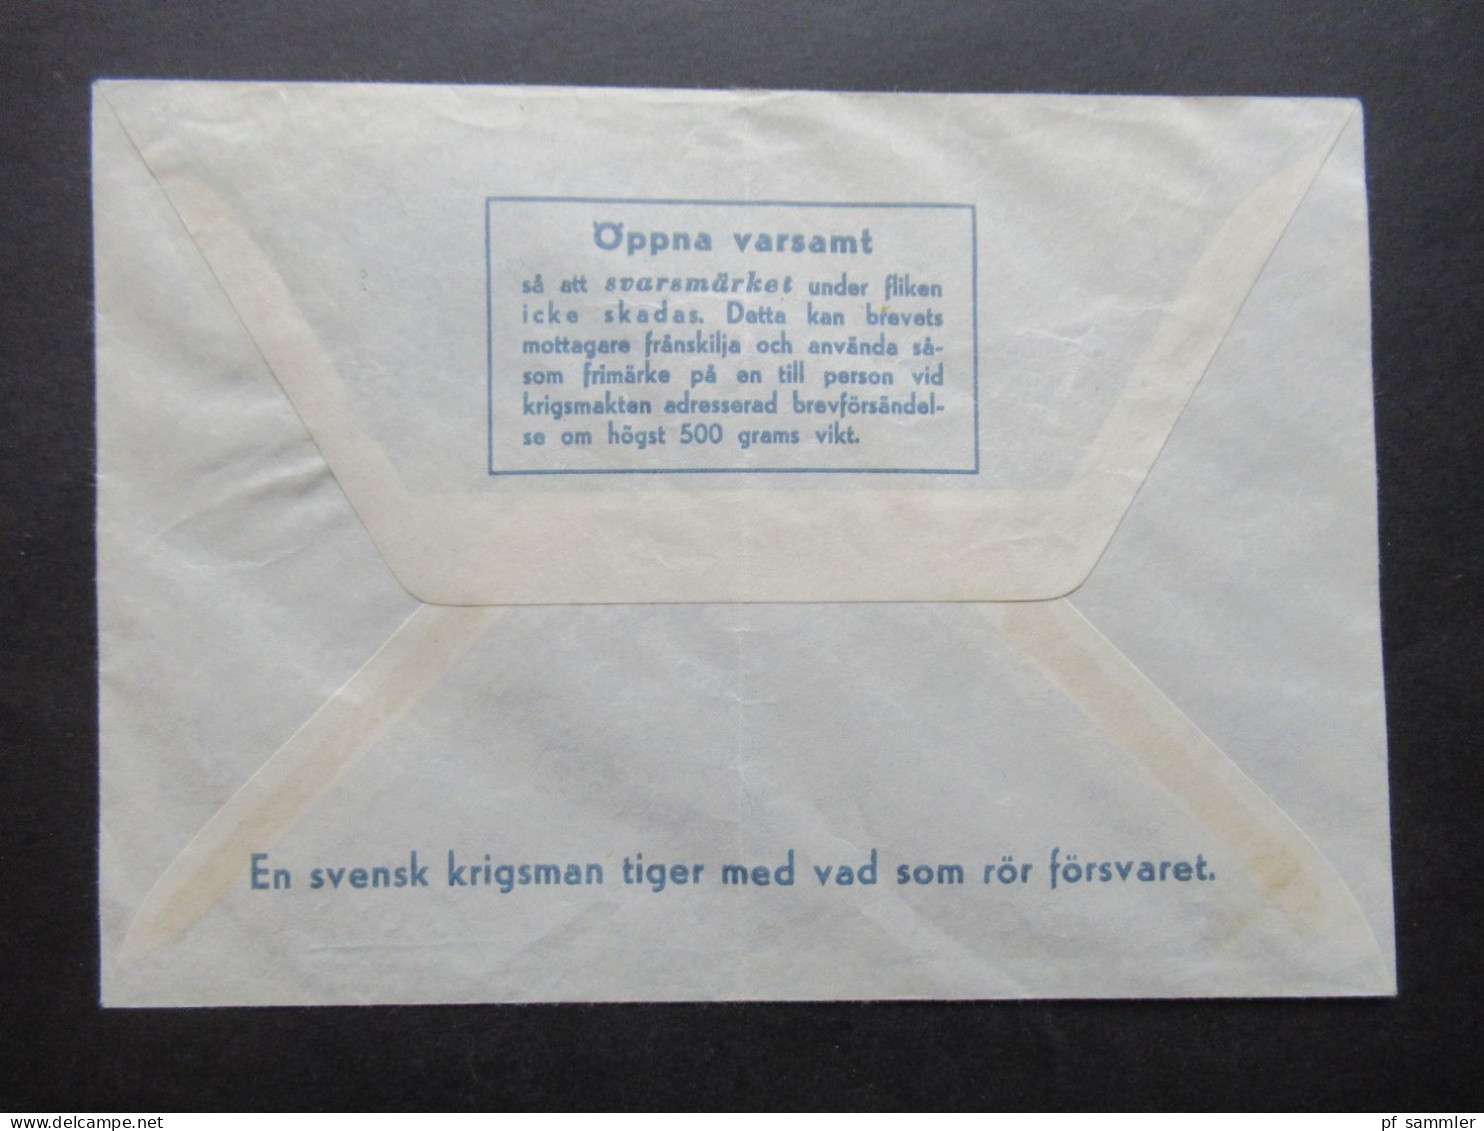 1968 Schweden Militärpost Militärbrev Stempel Svenska Bat Cypern / Schwedisches Militär Auf Zypern / FN Bat - Militari